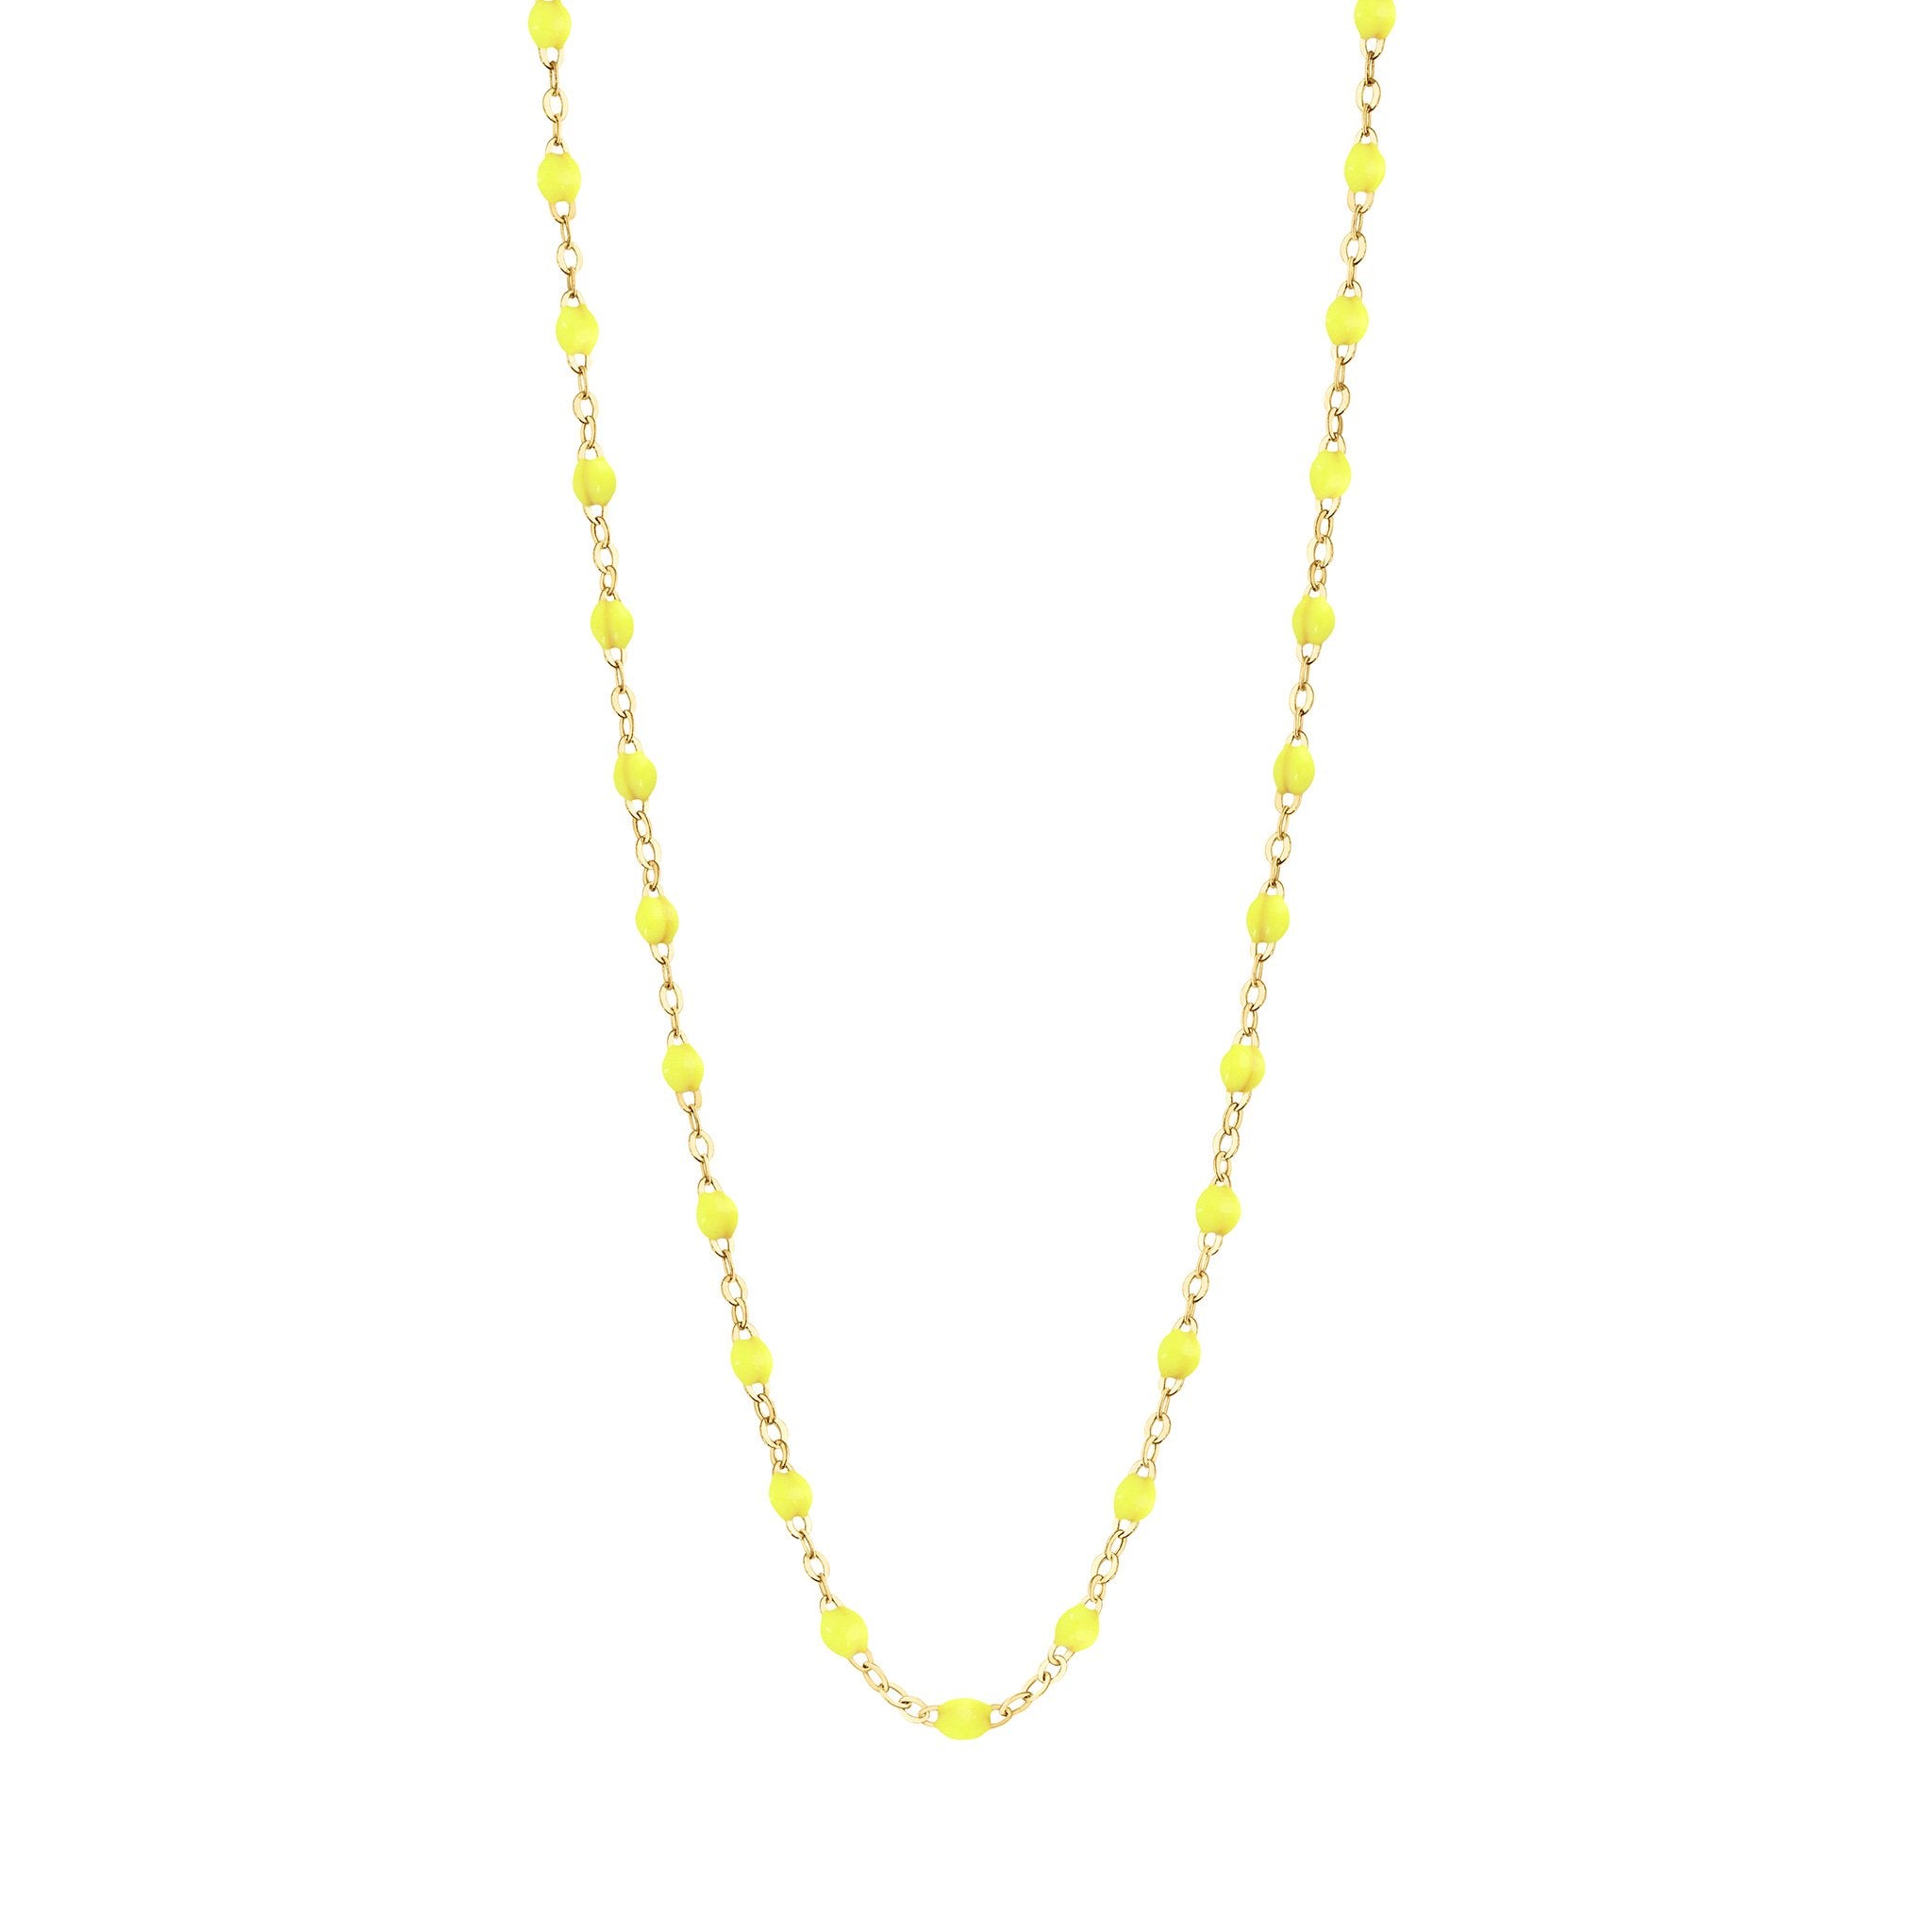 Collier jaune fluo Classique Gigi, or jaune, 45 cm classique gigi Référence :  b1gi001j1845xx -1